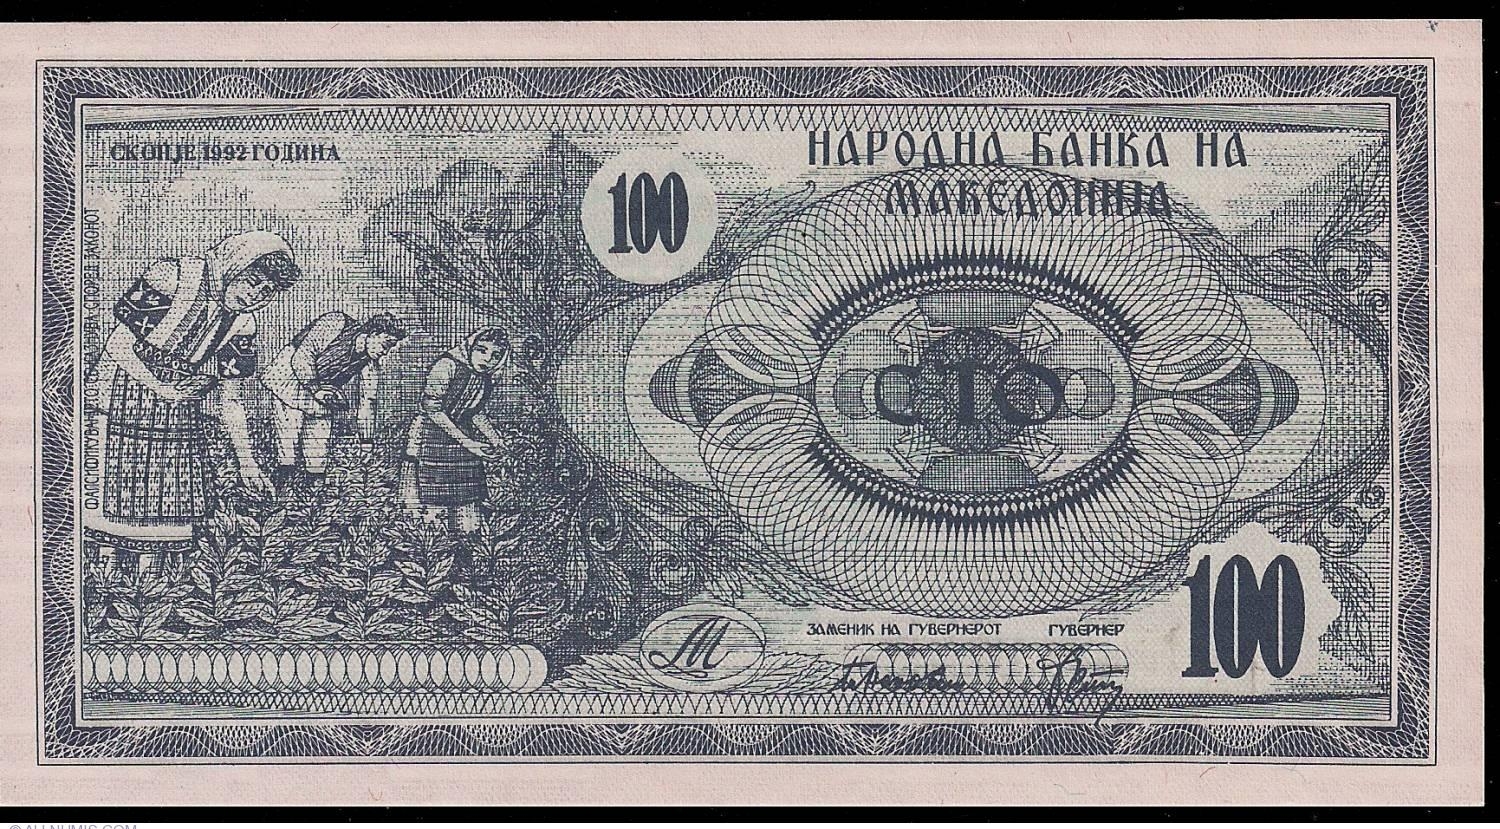 Денар - национальная валюта Македонии